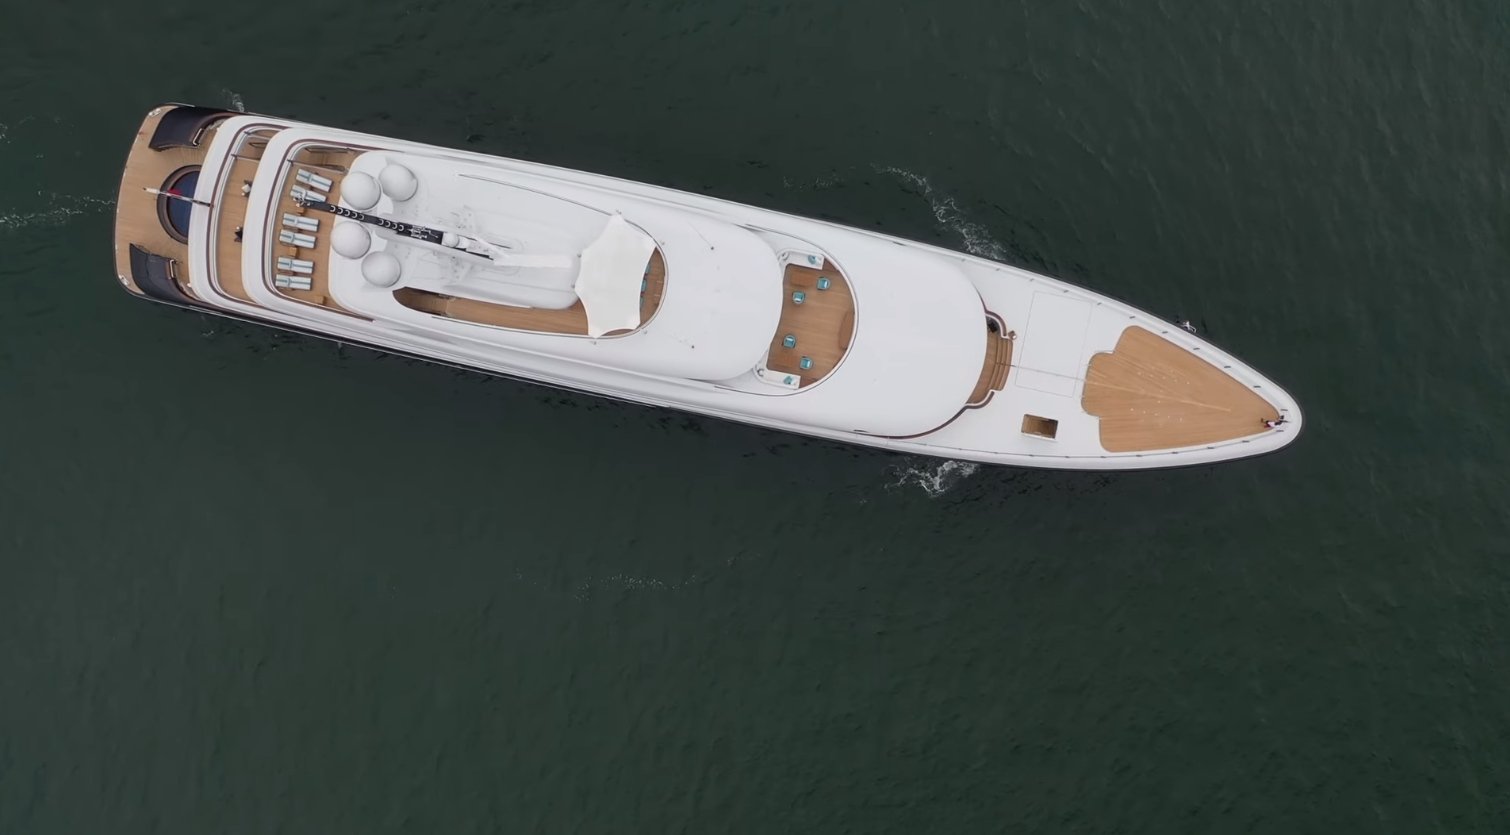 PODIUM yacht - Feadship - 2020 - propriétaire Roger Penske